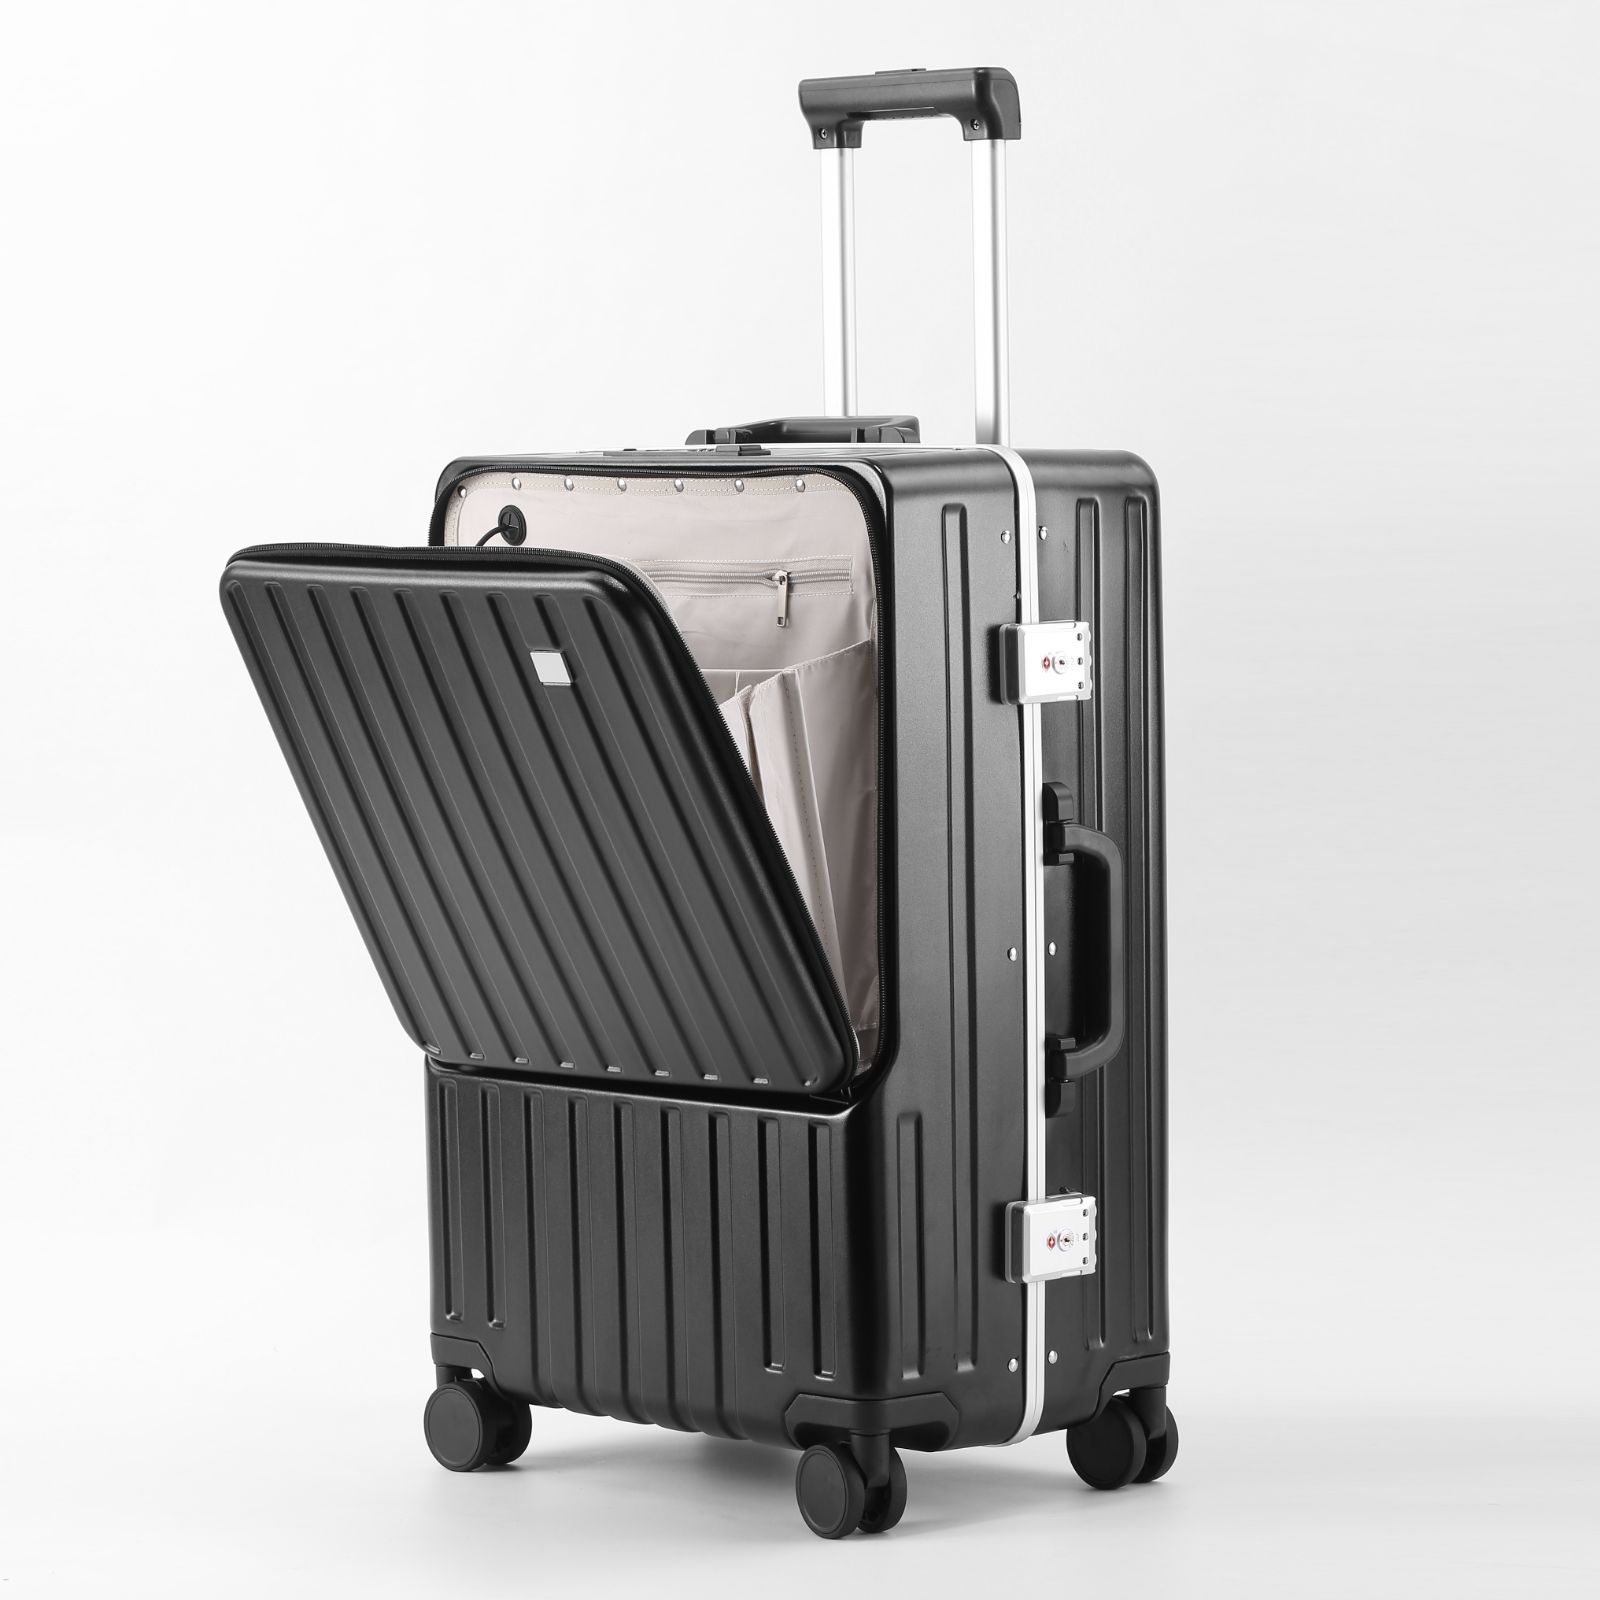 スーツケース 機内持ち込み可能Sサイズ20インチ軽量キャリーケース